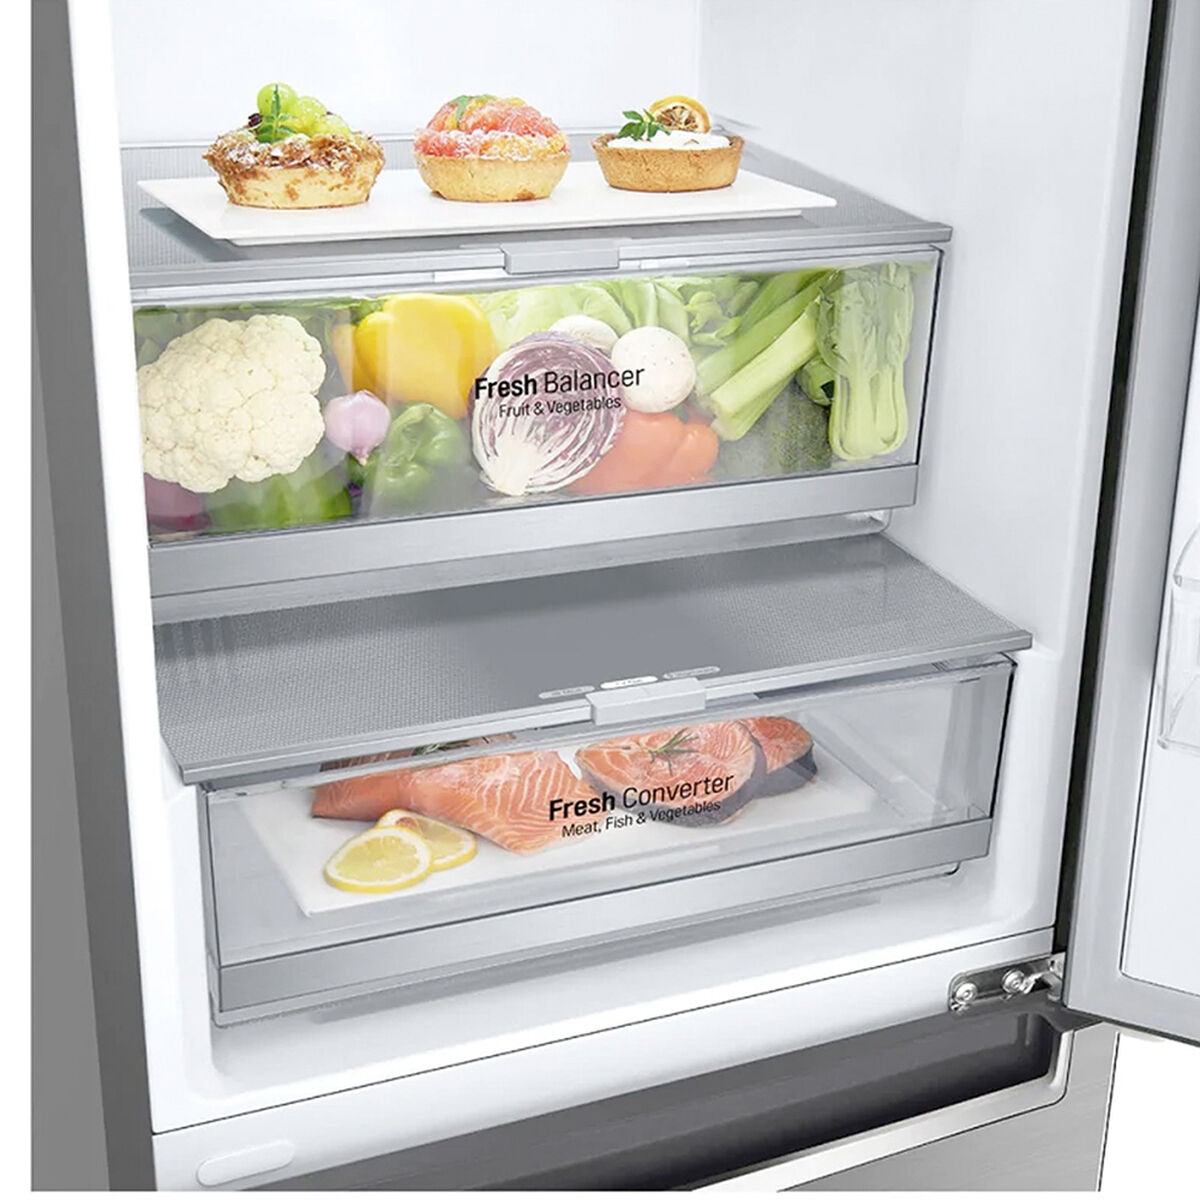 Refrigerador No Frost LG GB37SPP 336 lts.